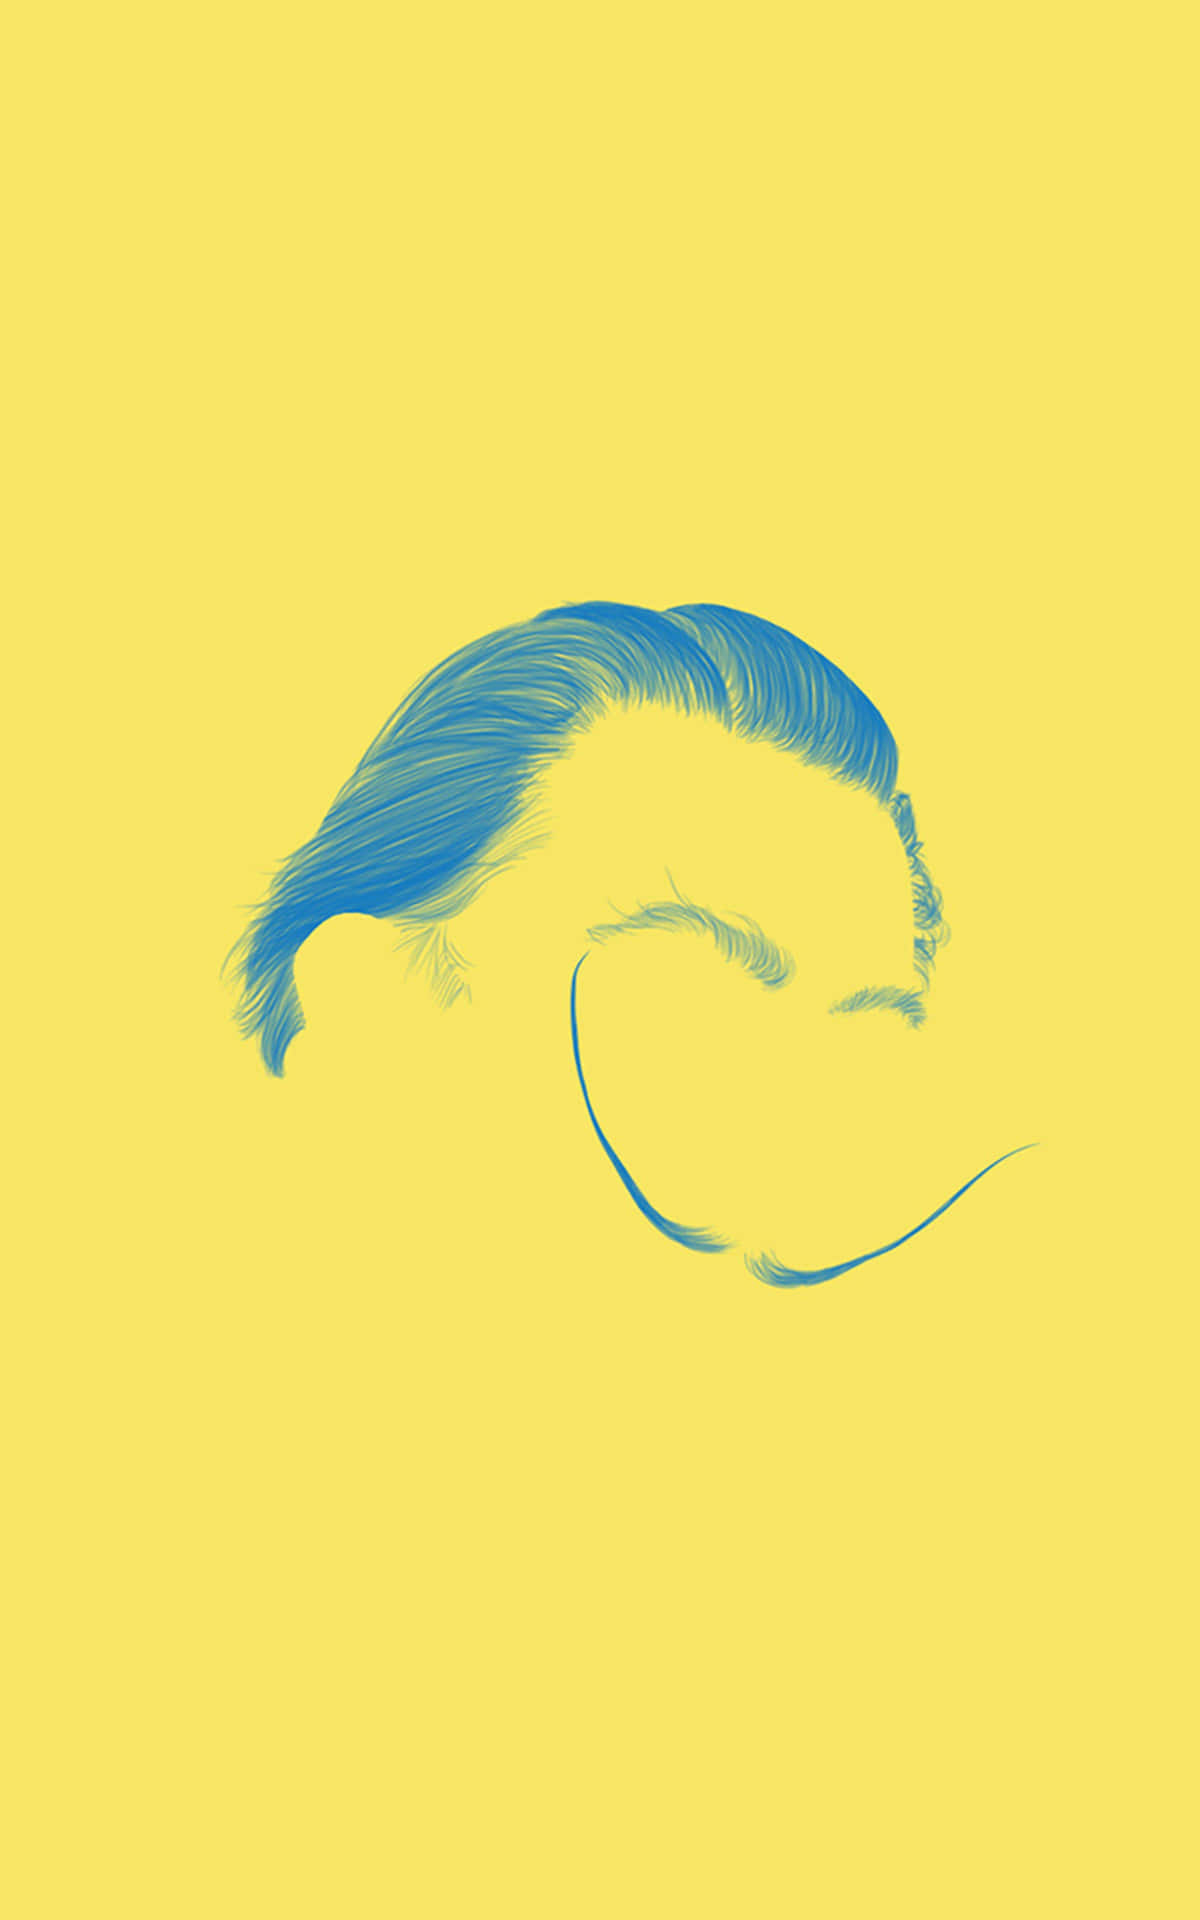 Dasgesicht Eines Mannes Mit Blauen Haaren Auf Einem Gelben Hintergrund. Wallpaper